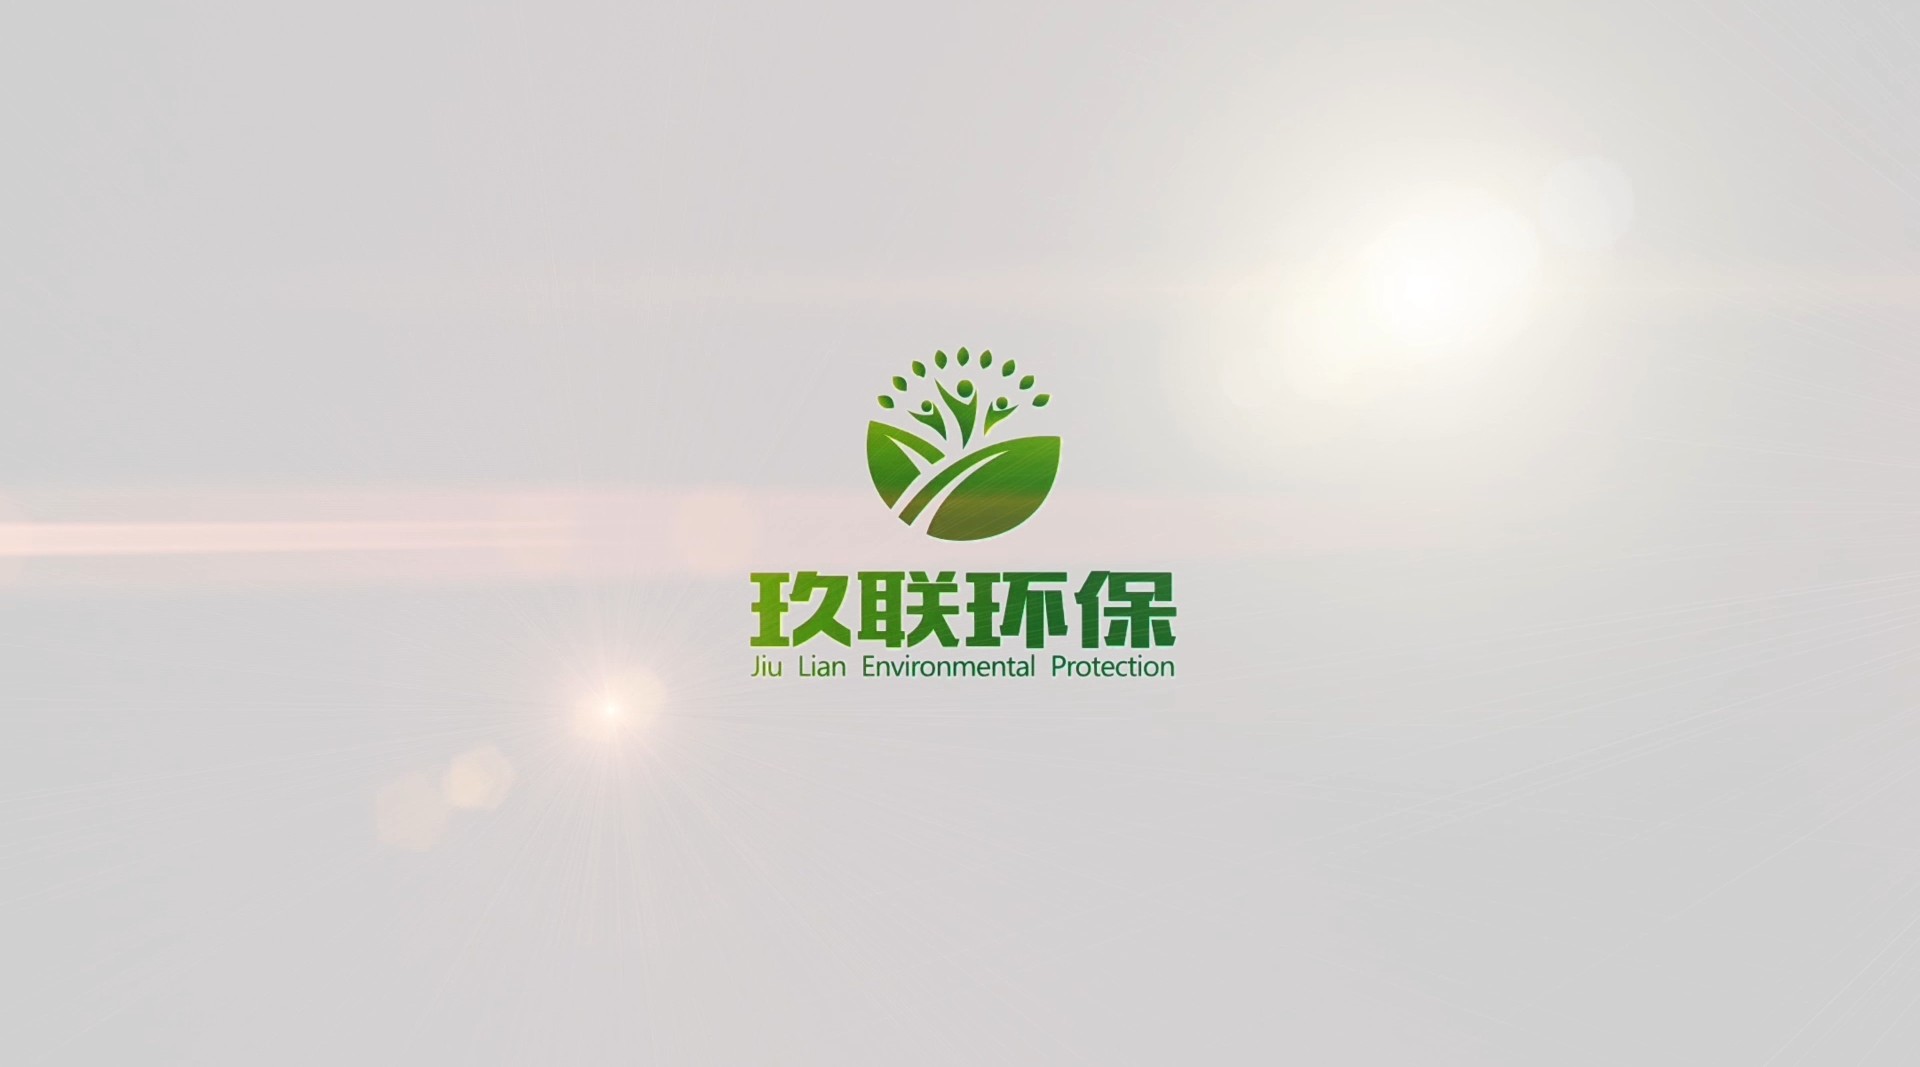 【当夏出品】——湖北玖联环保科技有限公司宣传片 